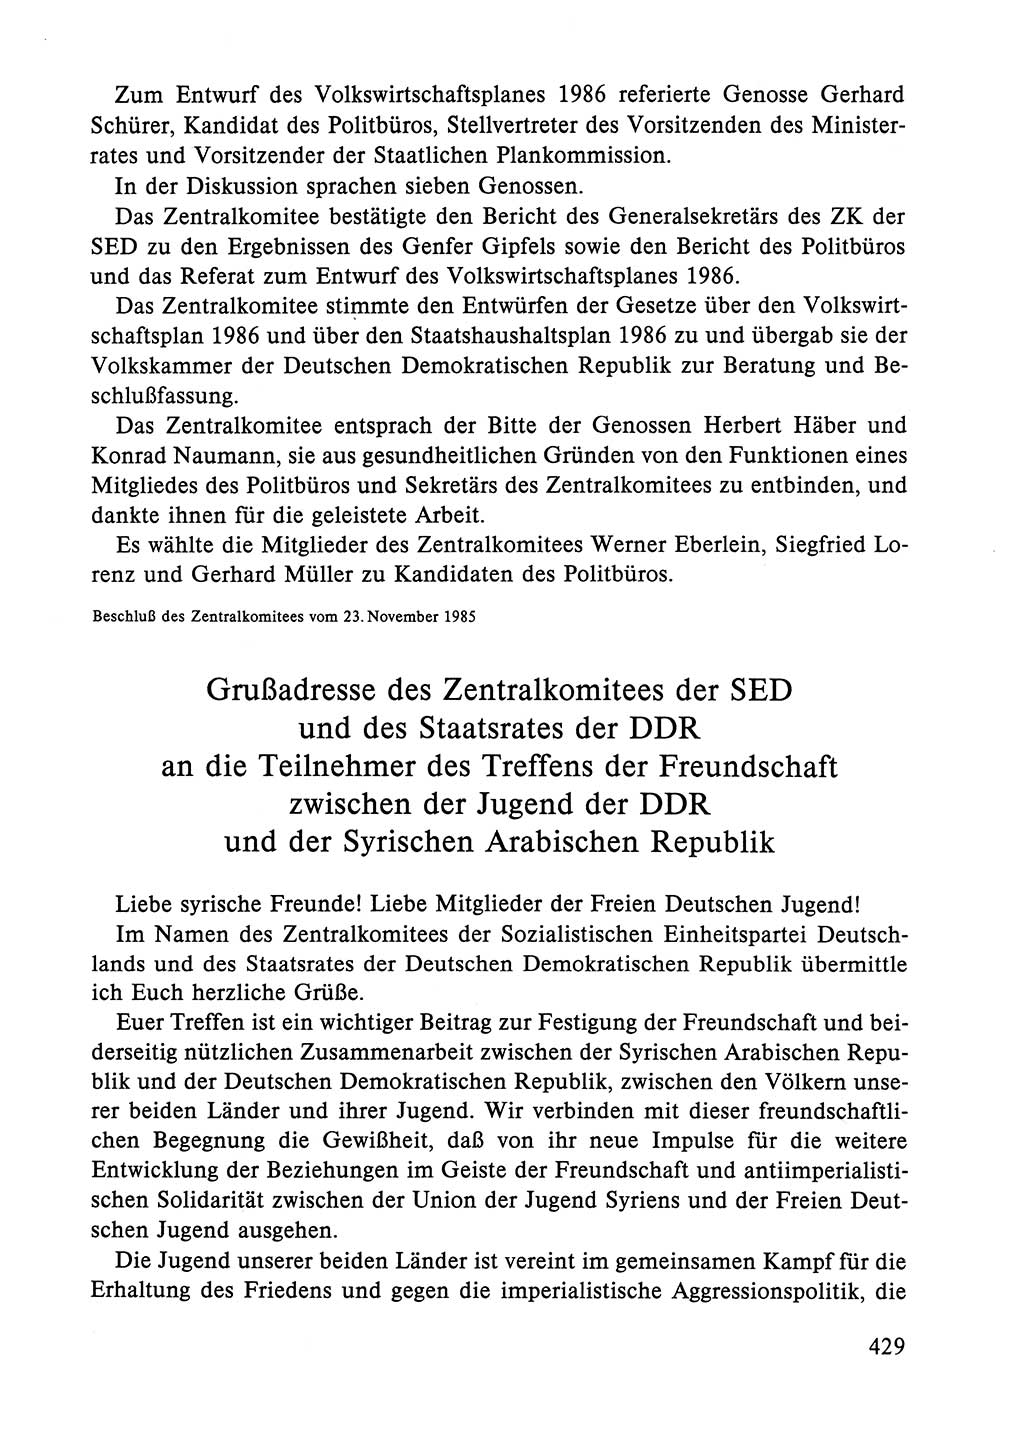 Dokumente der Sozialistischen Einheitspartei Deutschlands (SED) [Deutsche Demokratische Republik (DDR)] 1984-1985, Seite 429 (Dok. SED DDR 1984-1985, S. 429)